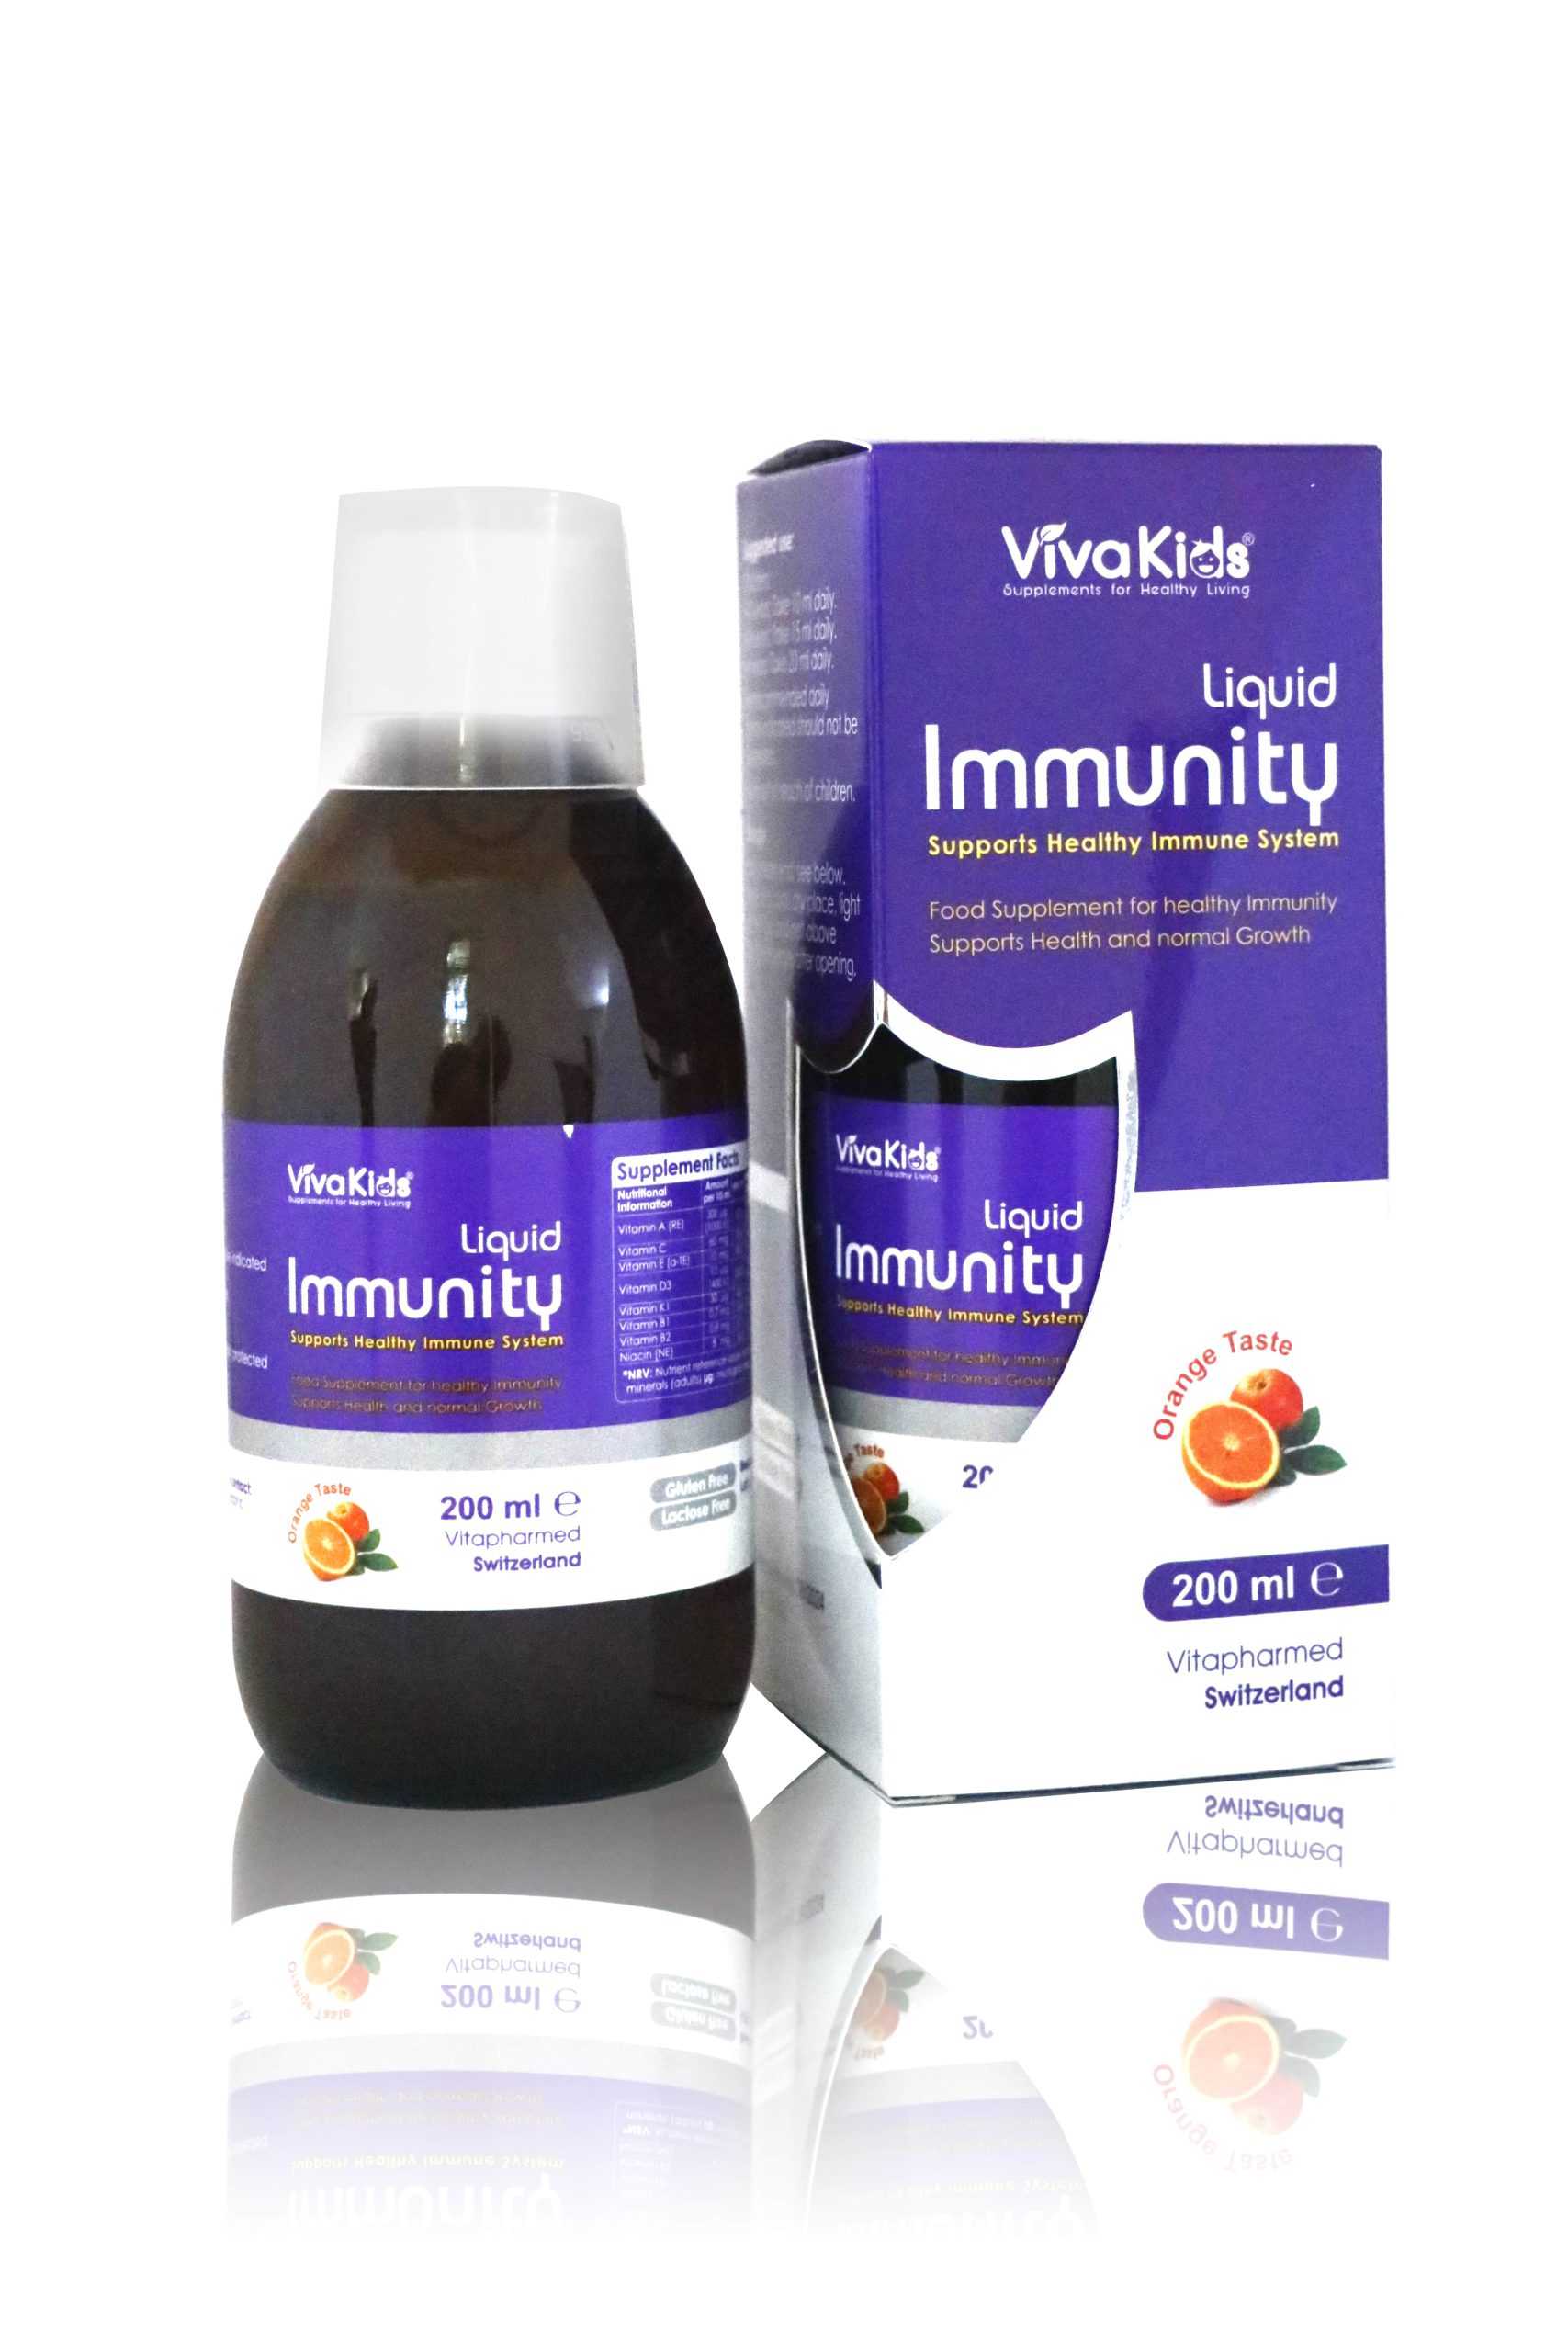 vivakids immunity liquid tăng cường miễn dịch cho bé